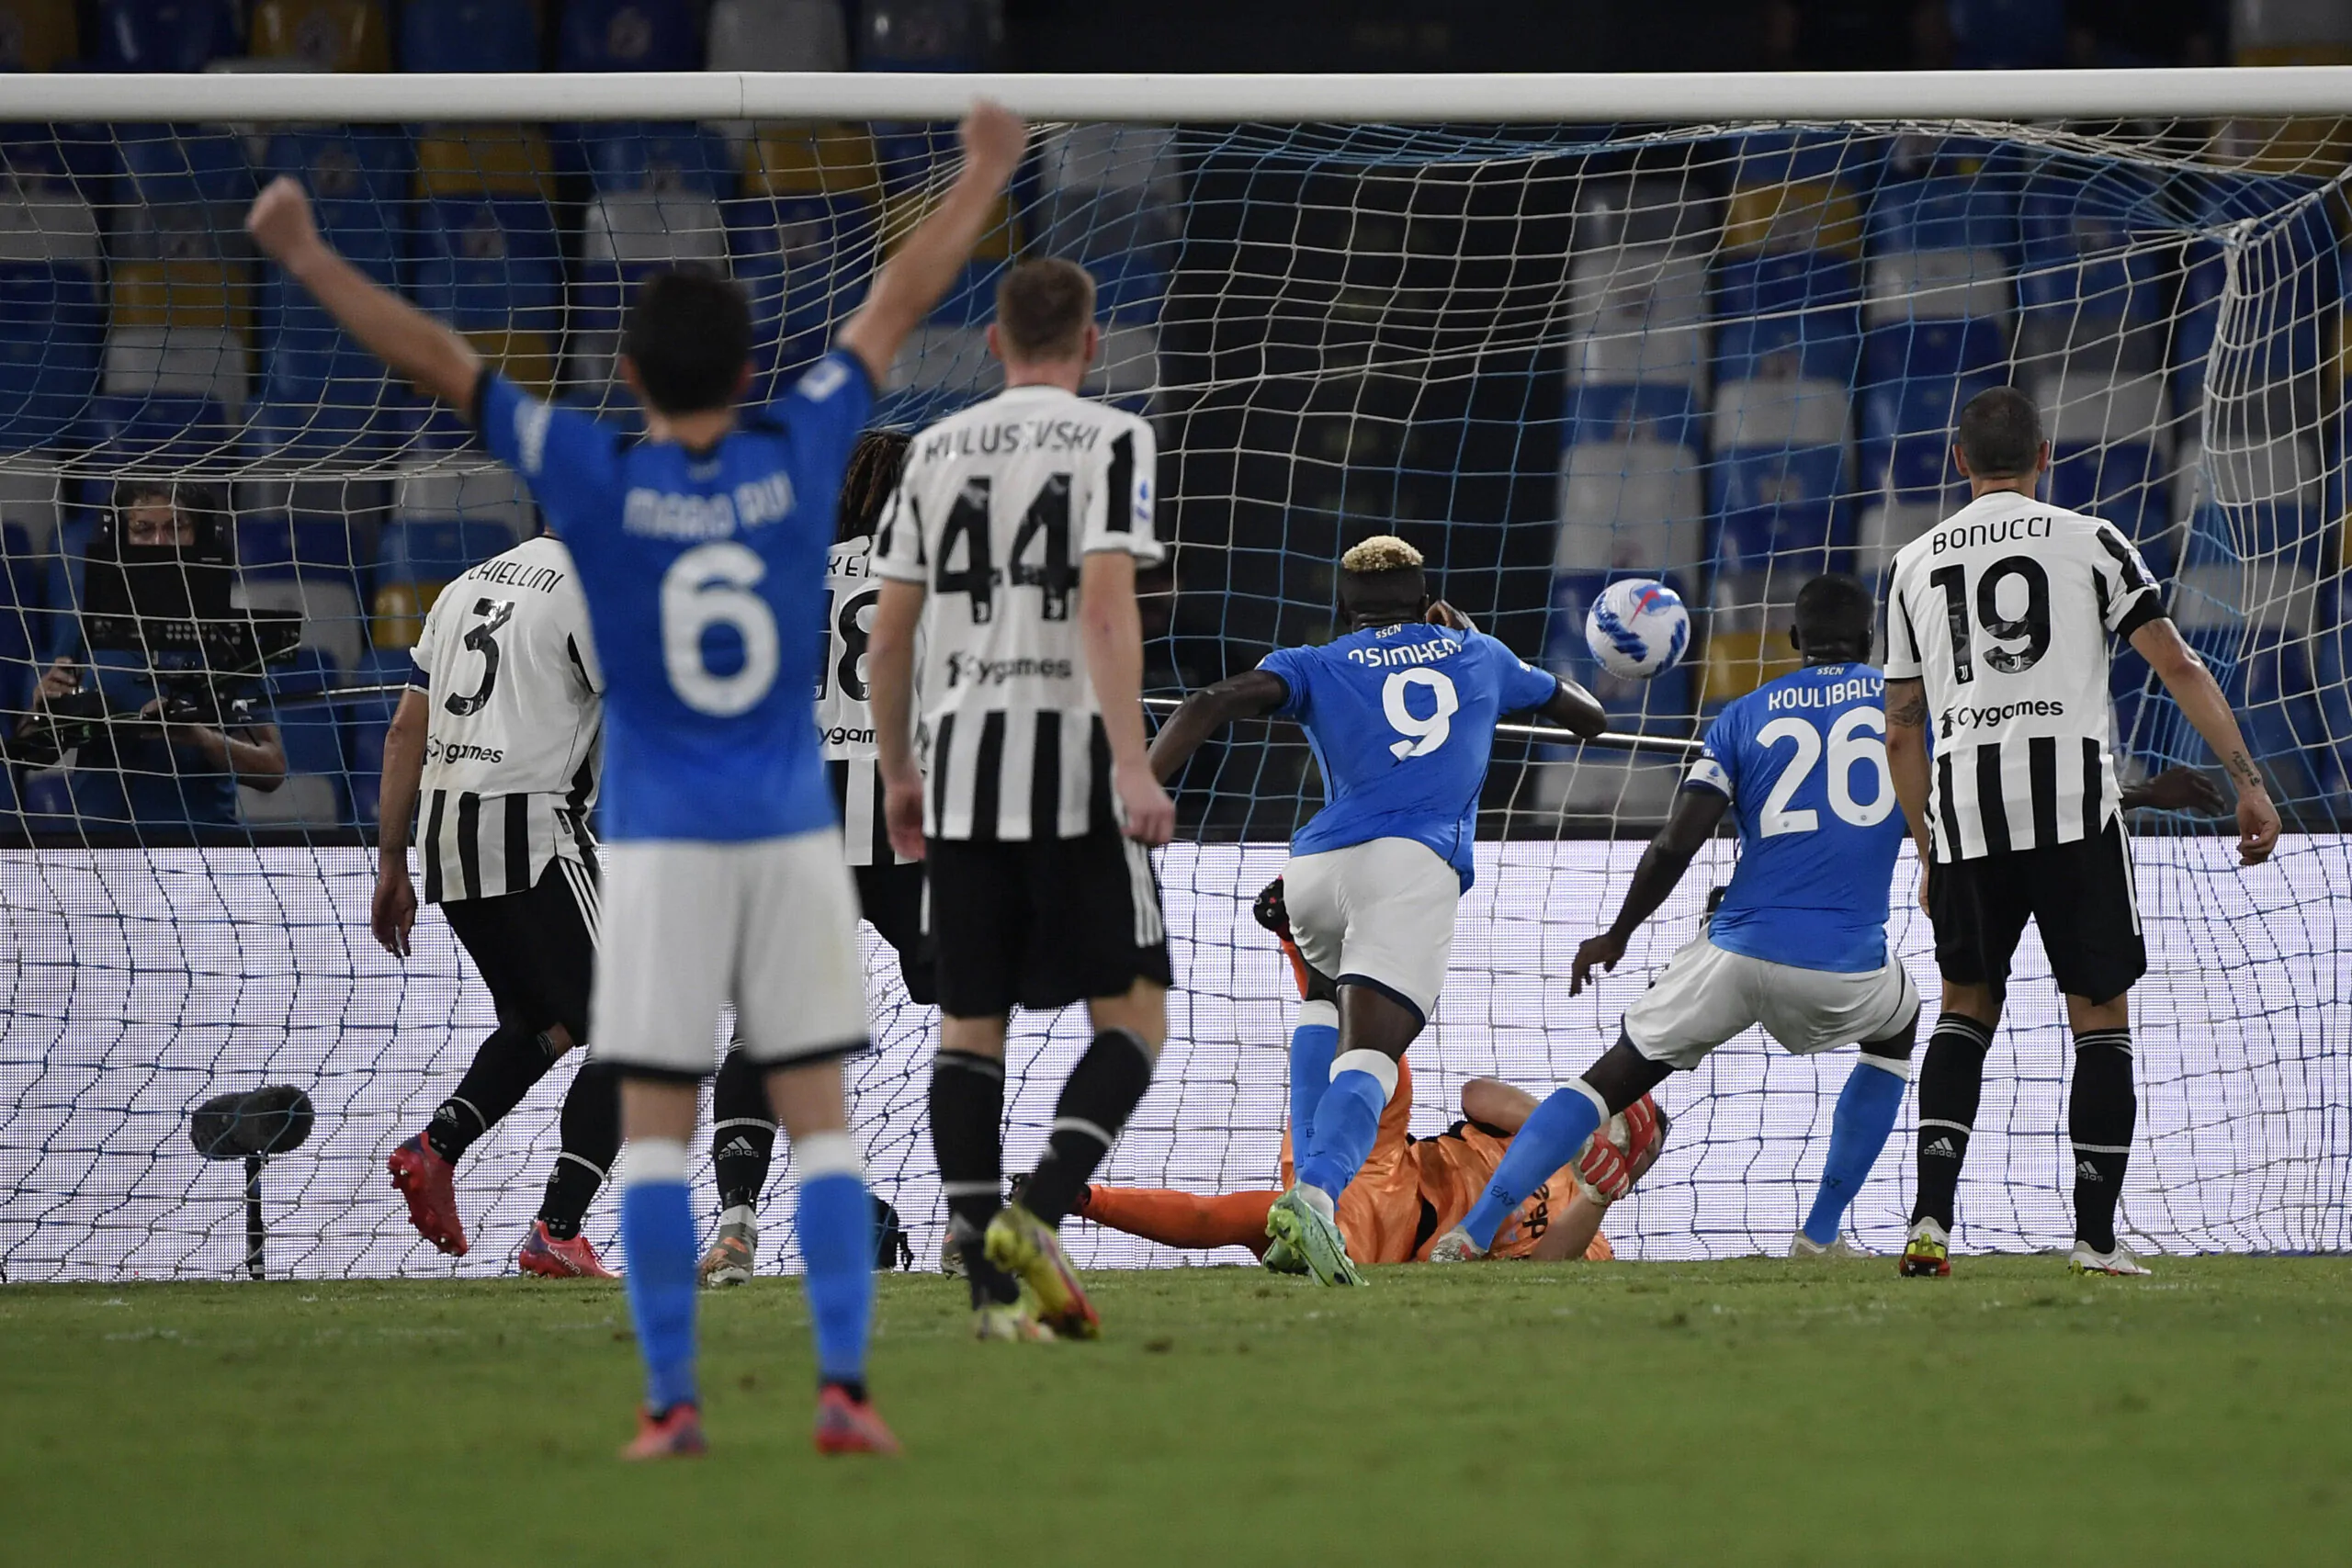 “A Napoli non c’è stata gara, nemmeno sull’1-0 per i bianconeri”, la stoccata dell’ex Inter